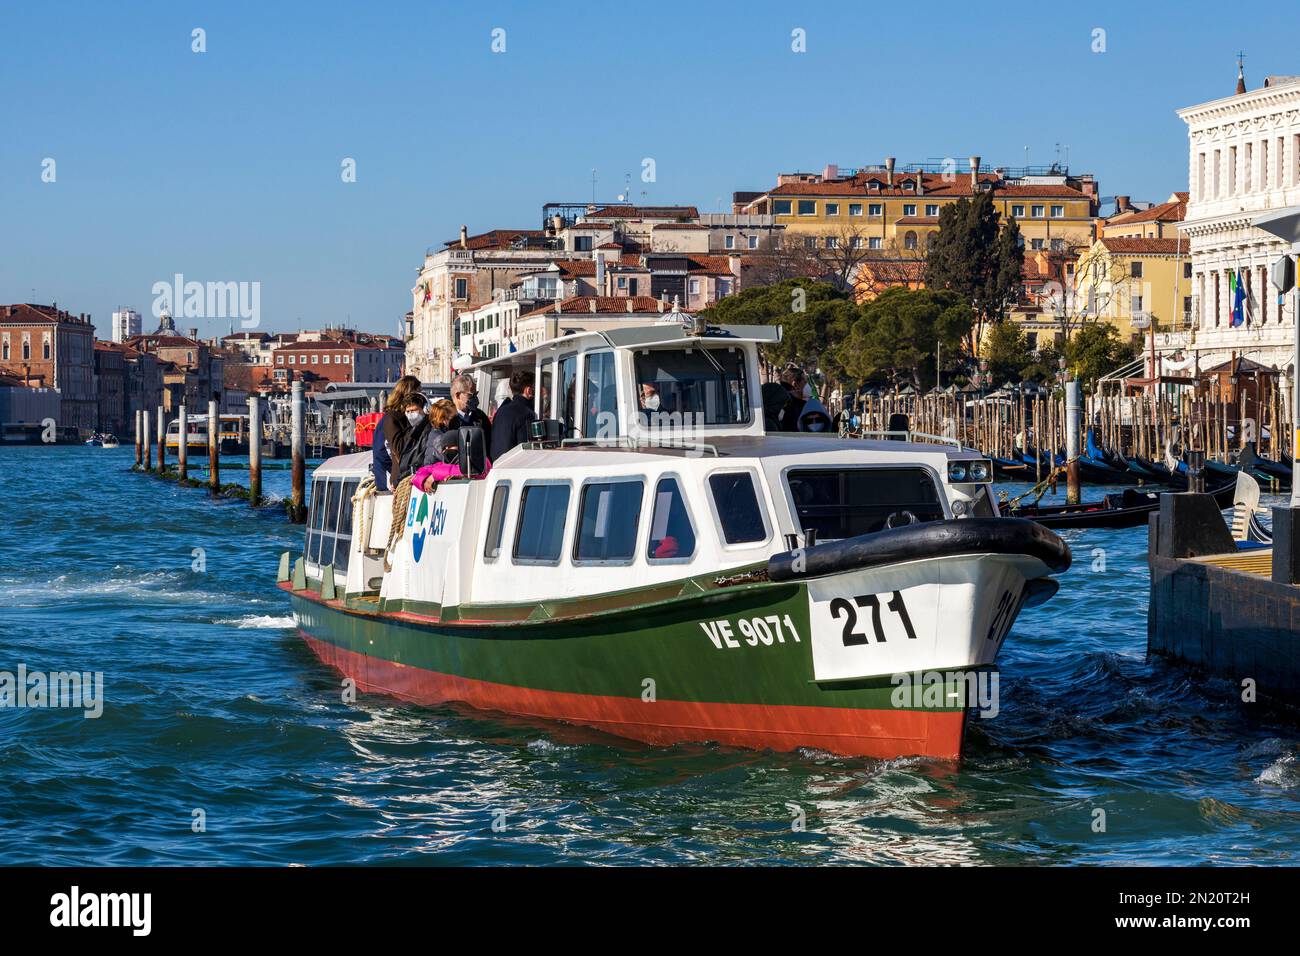 Vaporetto, ACTV, Canal Grande, Grand Canal, Venice, Veneto, Italy, Europe Stock Photo